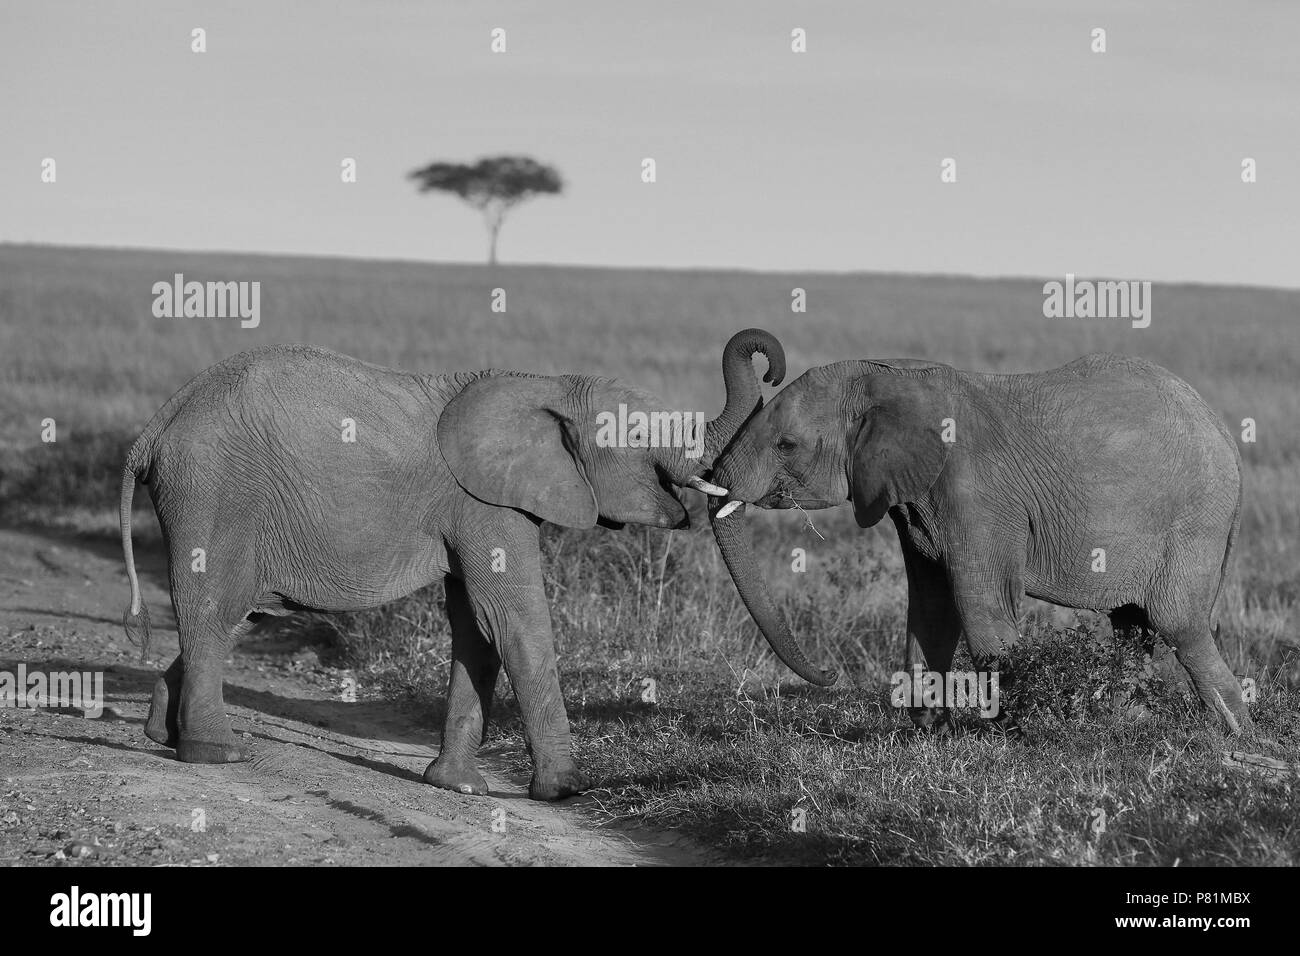 Les éléphants aux défenses jouant des combats en Afrique Masai Mara savane photo en noir et blanc Banque D'Images